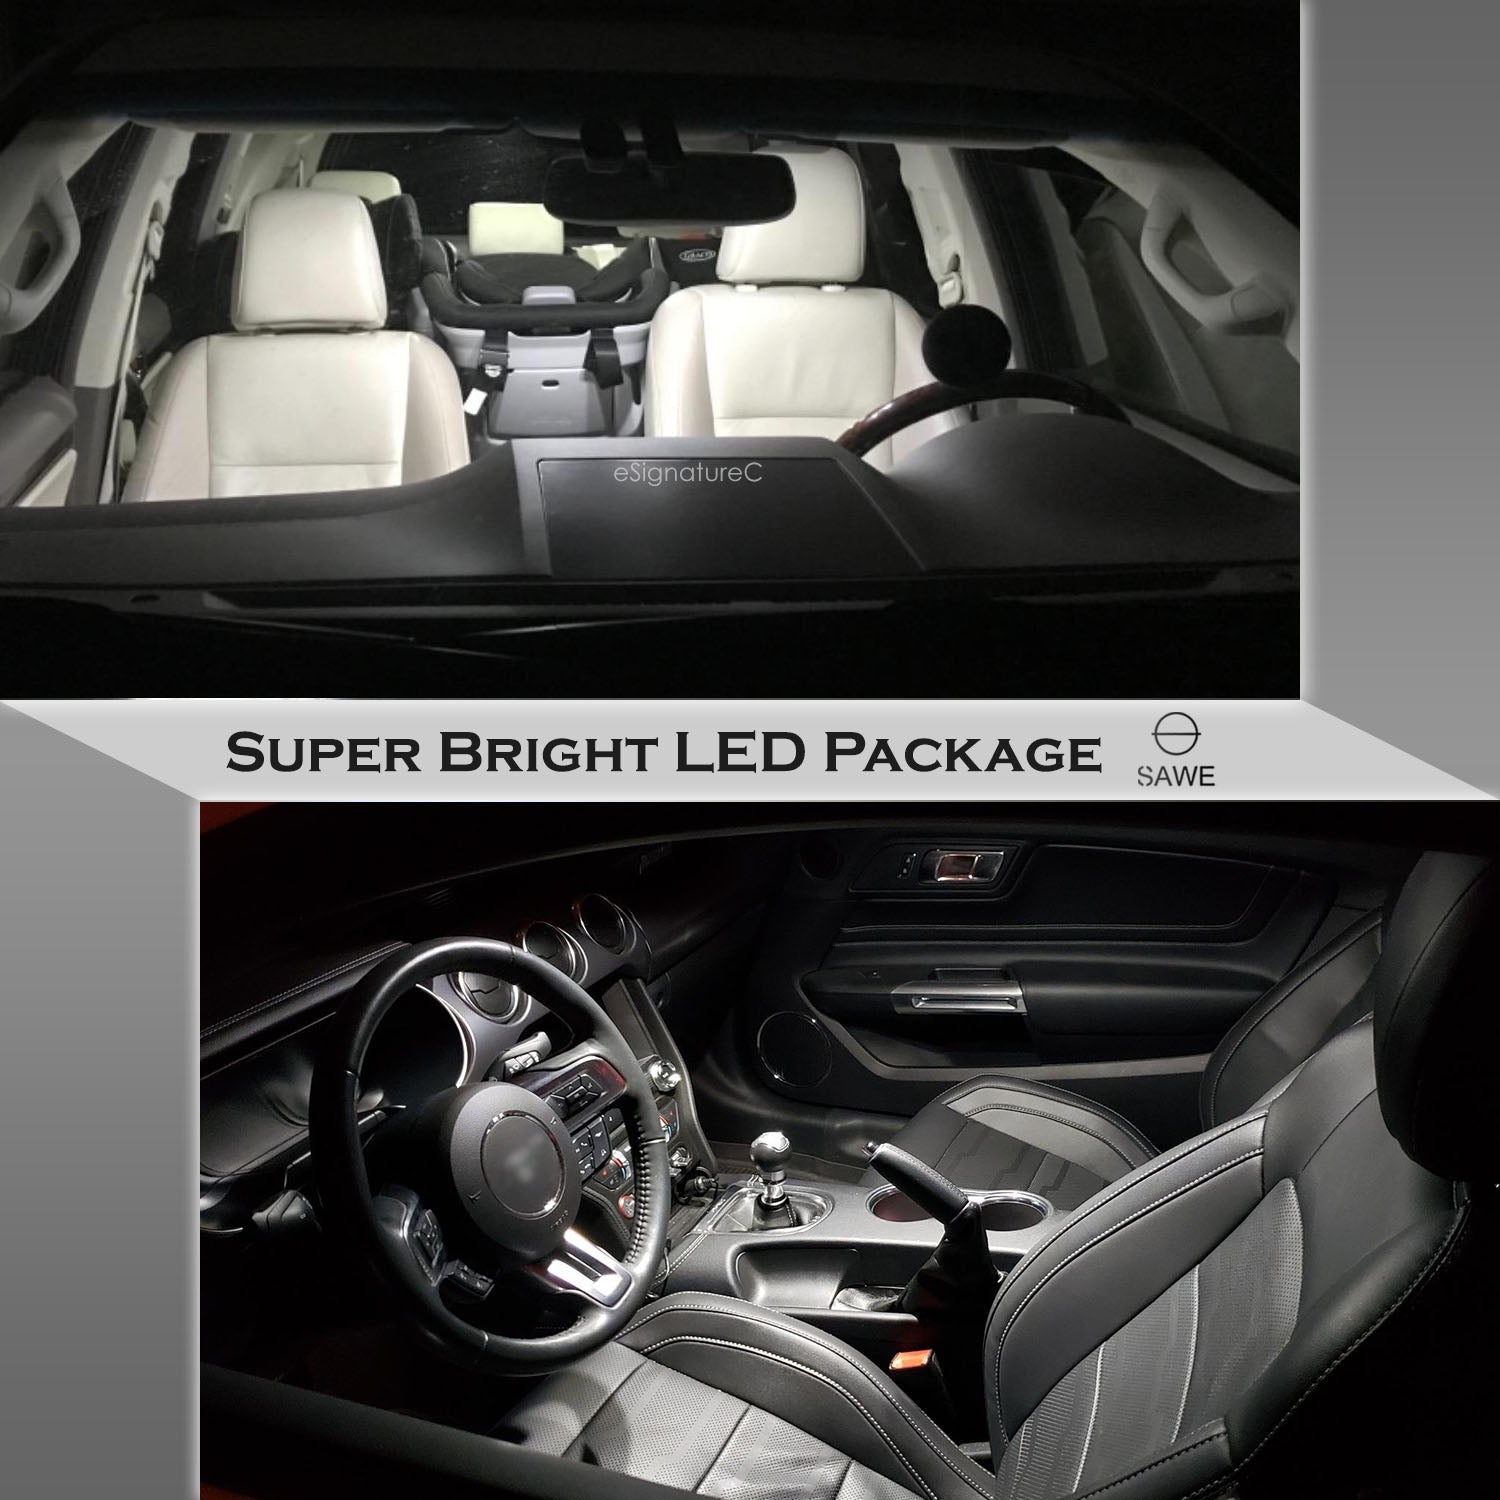 For Porsche 911 997 Interior LED Lights - Dome & Map Light Bulb Package Kit for 2005 - 2012 - White